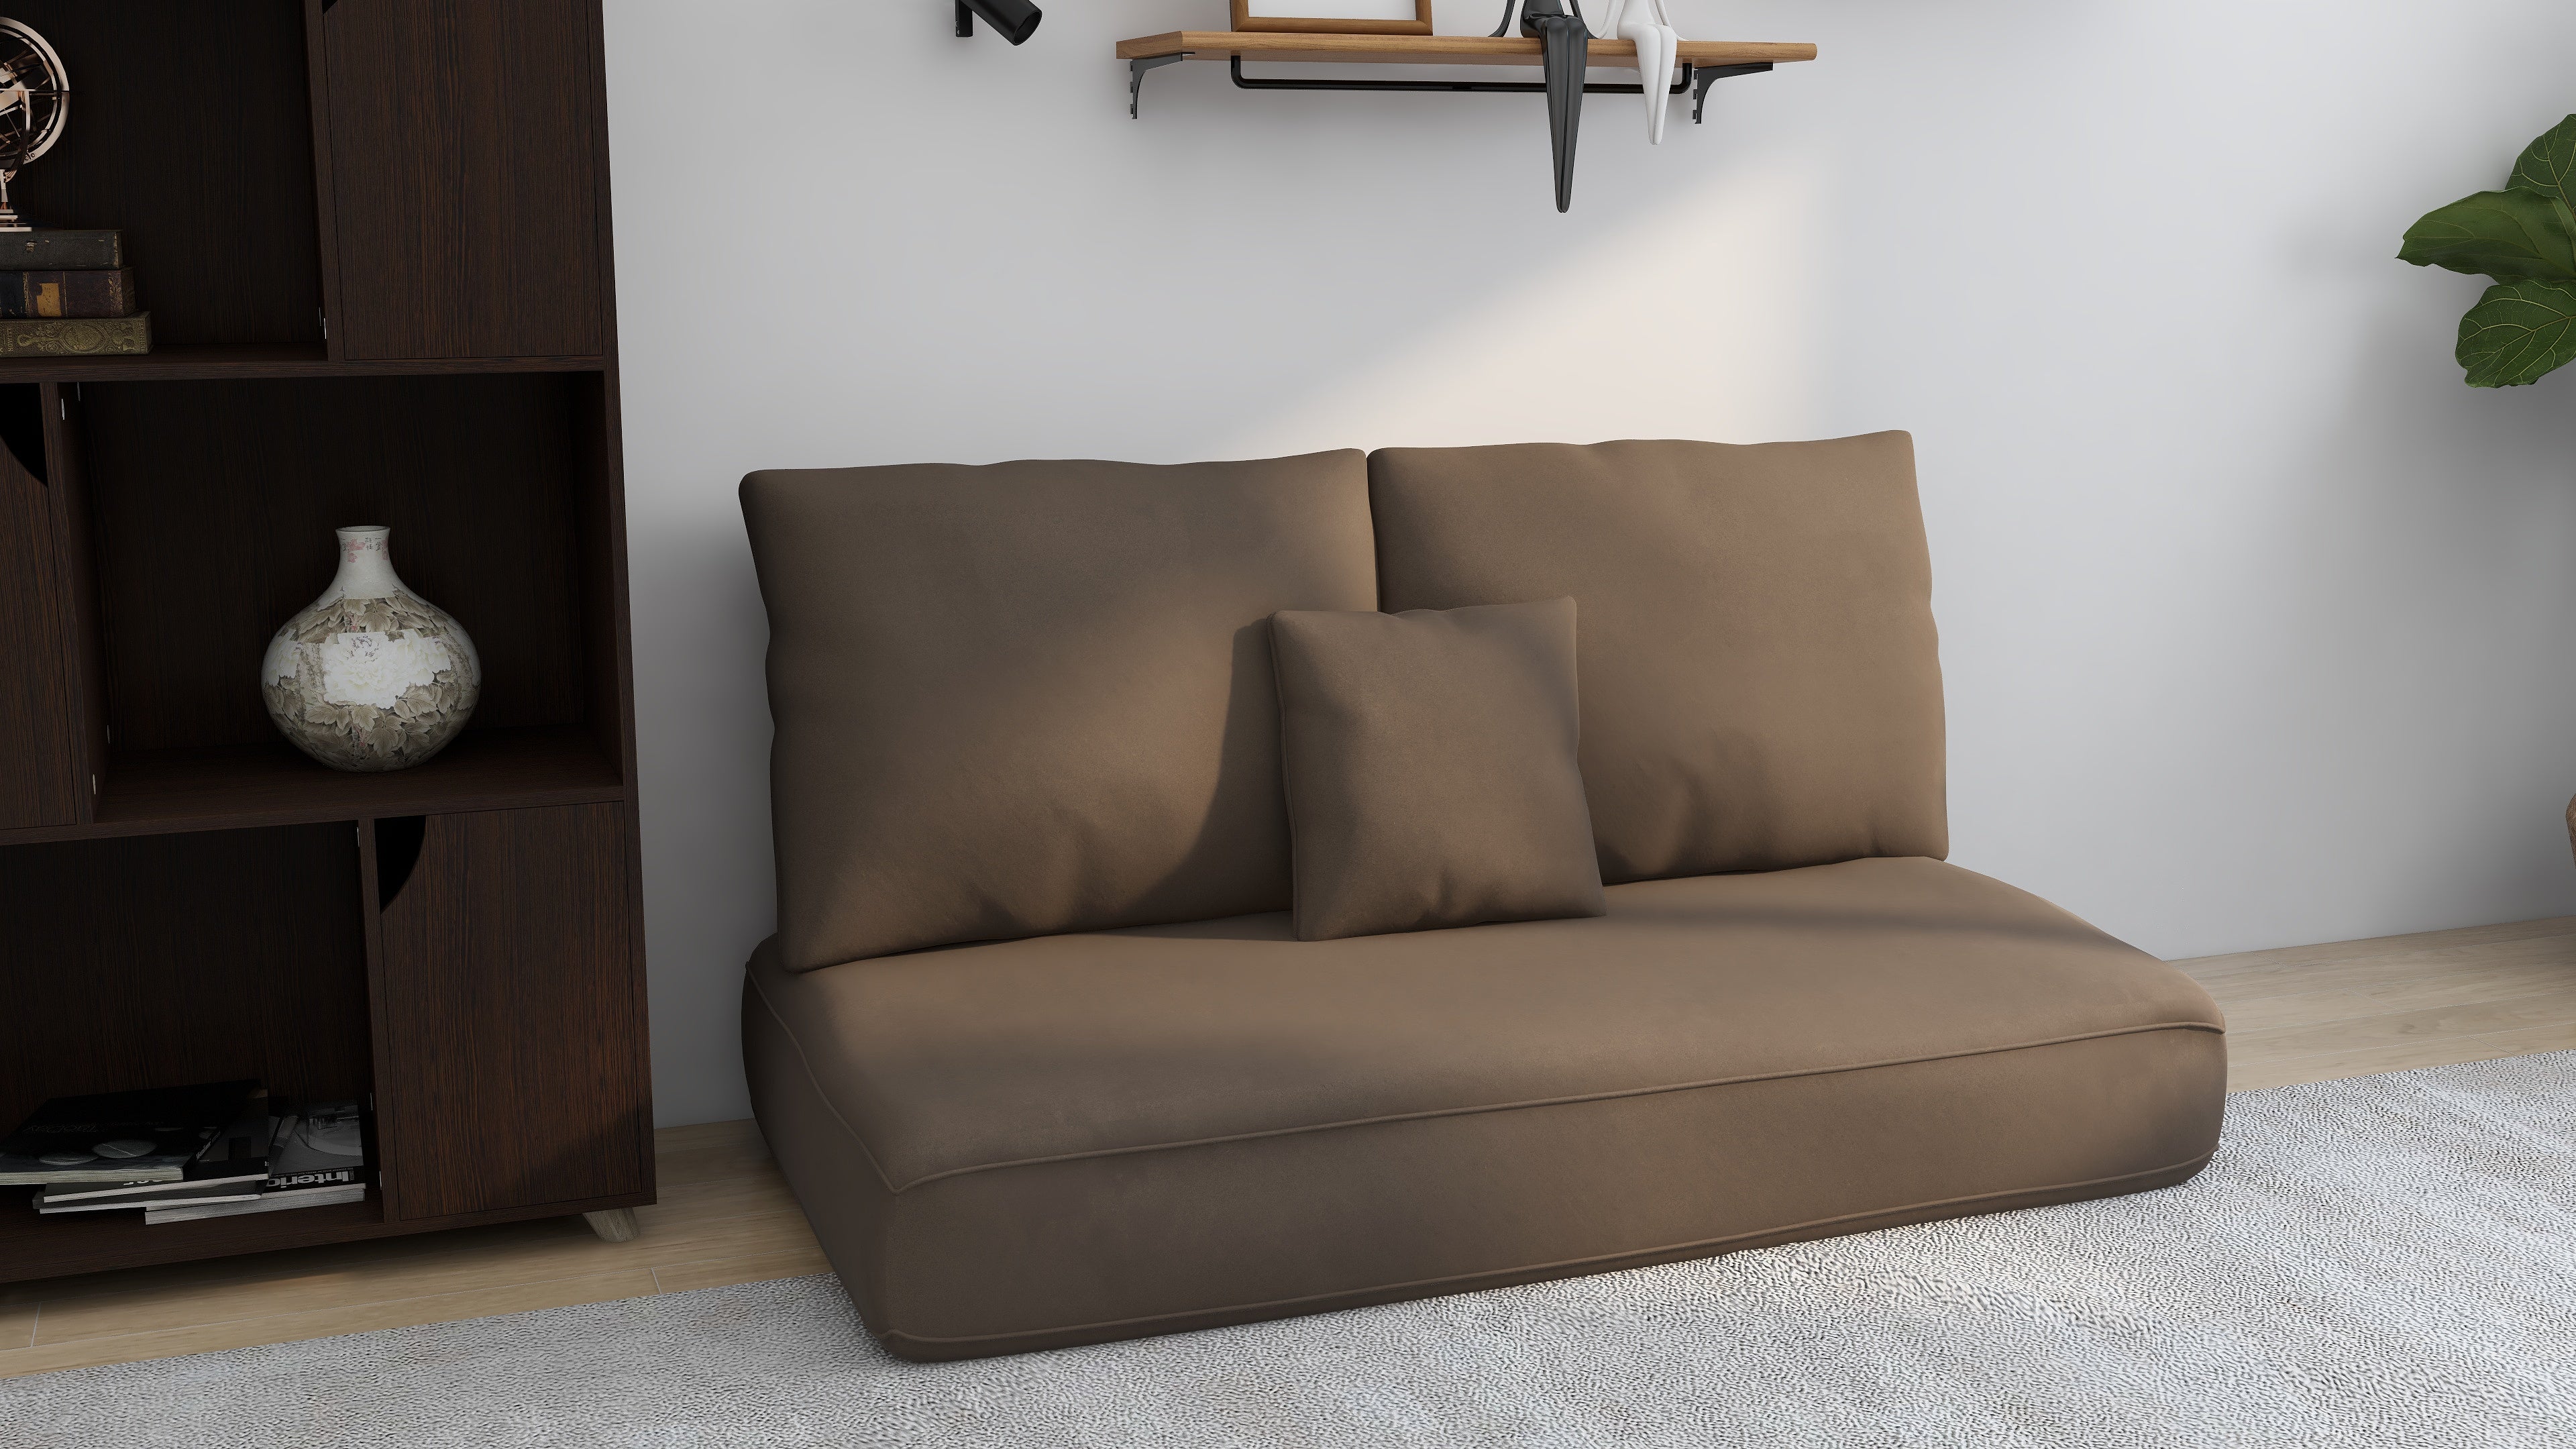 Beanie MNL - KENDRA Lazy Sofa Beanie MNL